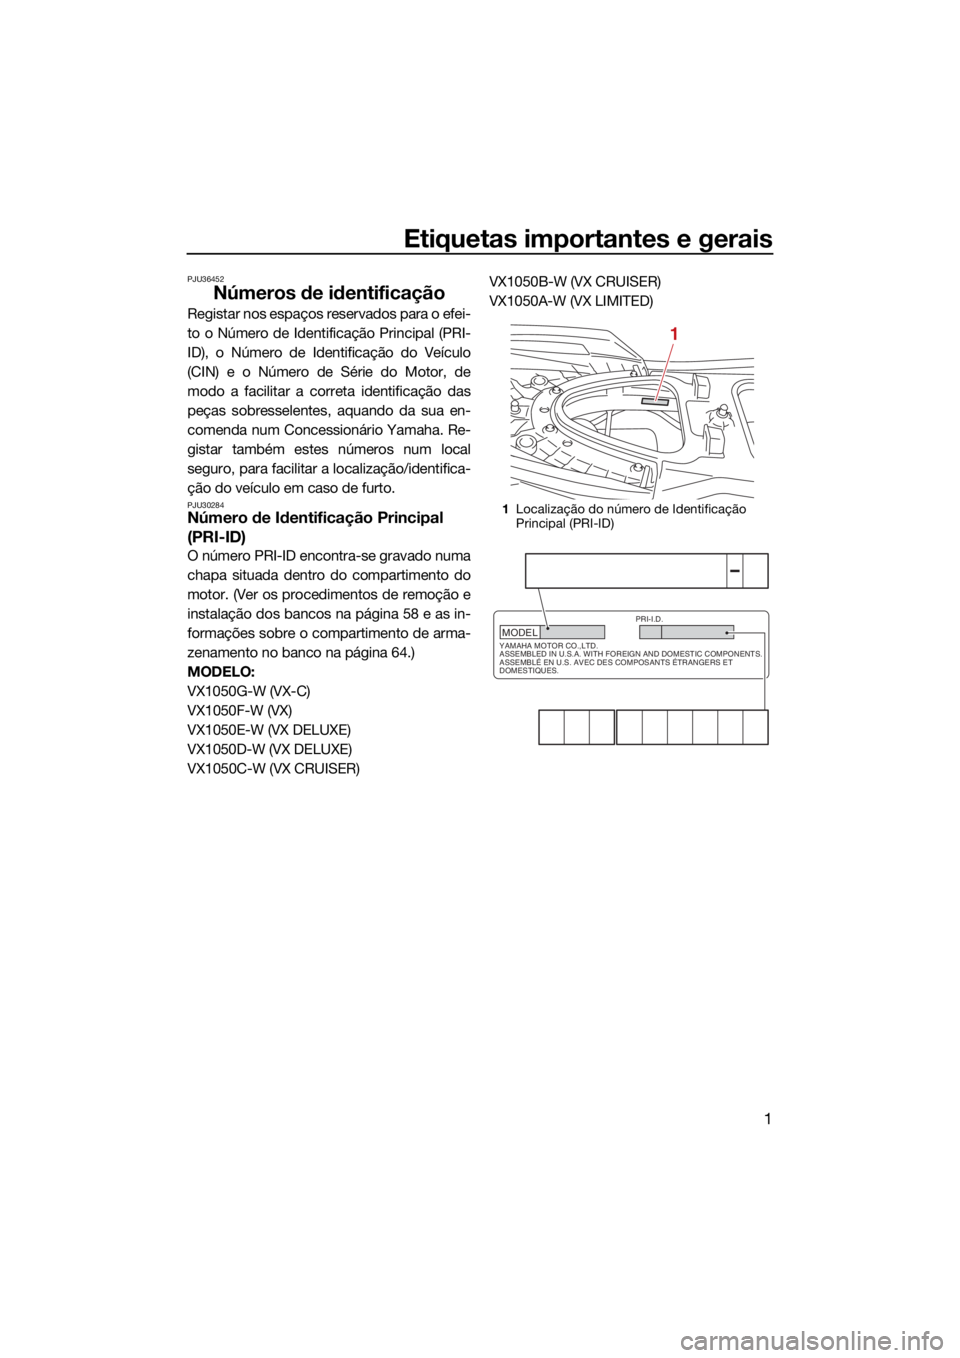 YAMAHA VX CRUISER 2021  Manual de utilização (in Portuguese) Etiquetas importantes e gerais
1
PJU36452
Números de identificação
Registar nos espaços reservados para o efei-
to o Número de Identificação Principal (PRI-
ID), o Número de Identificação do